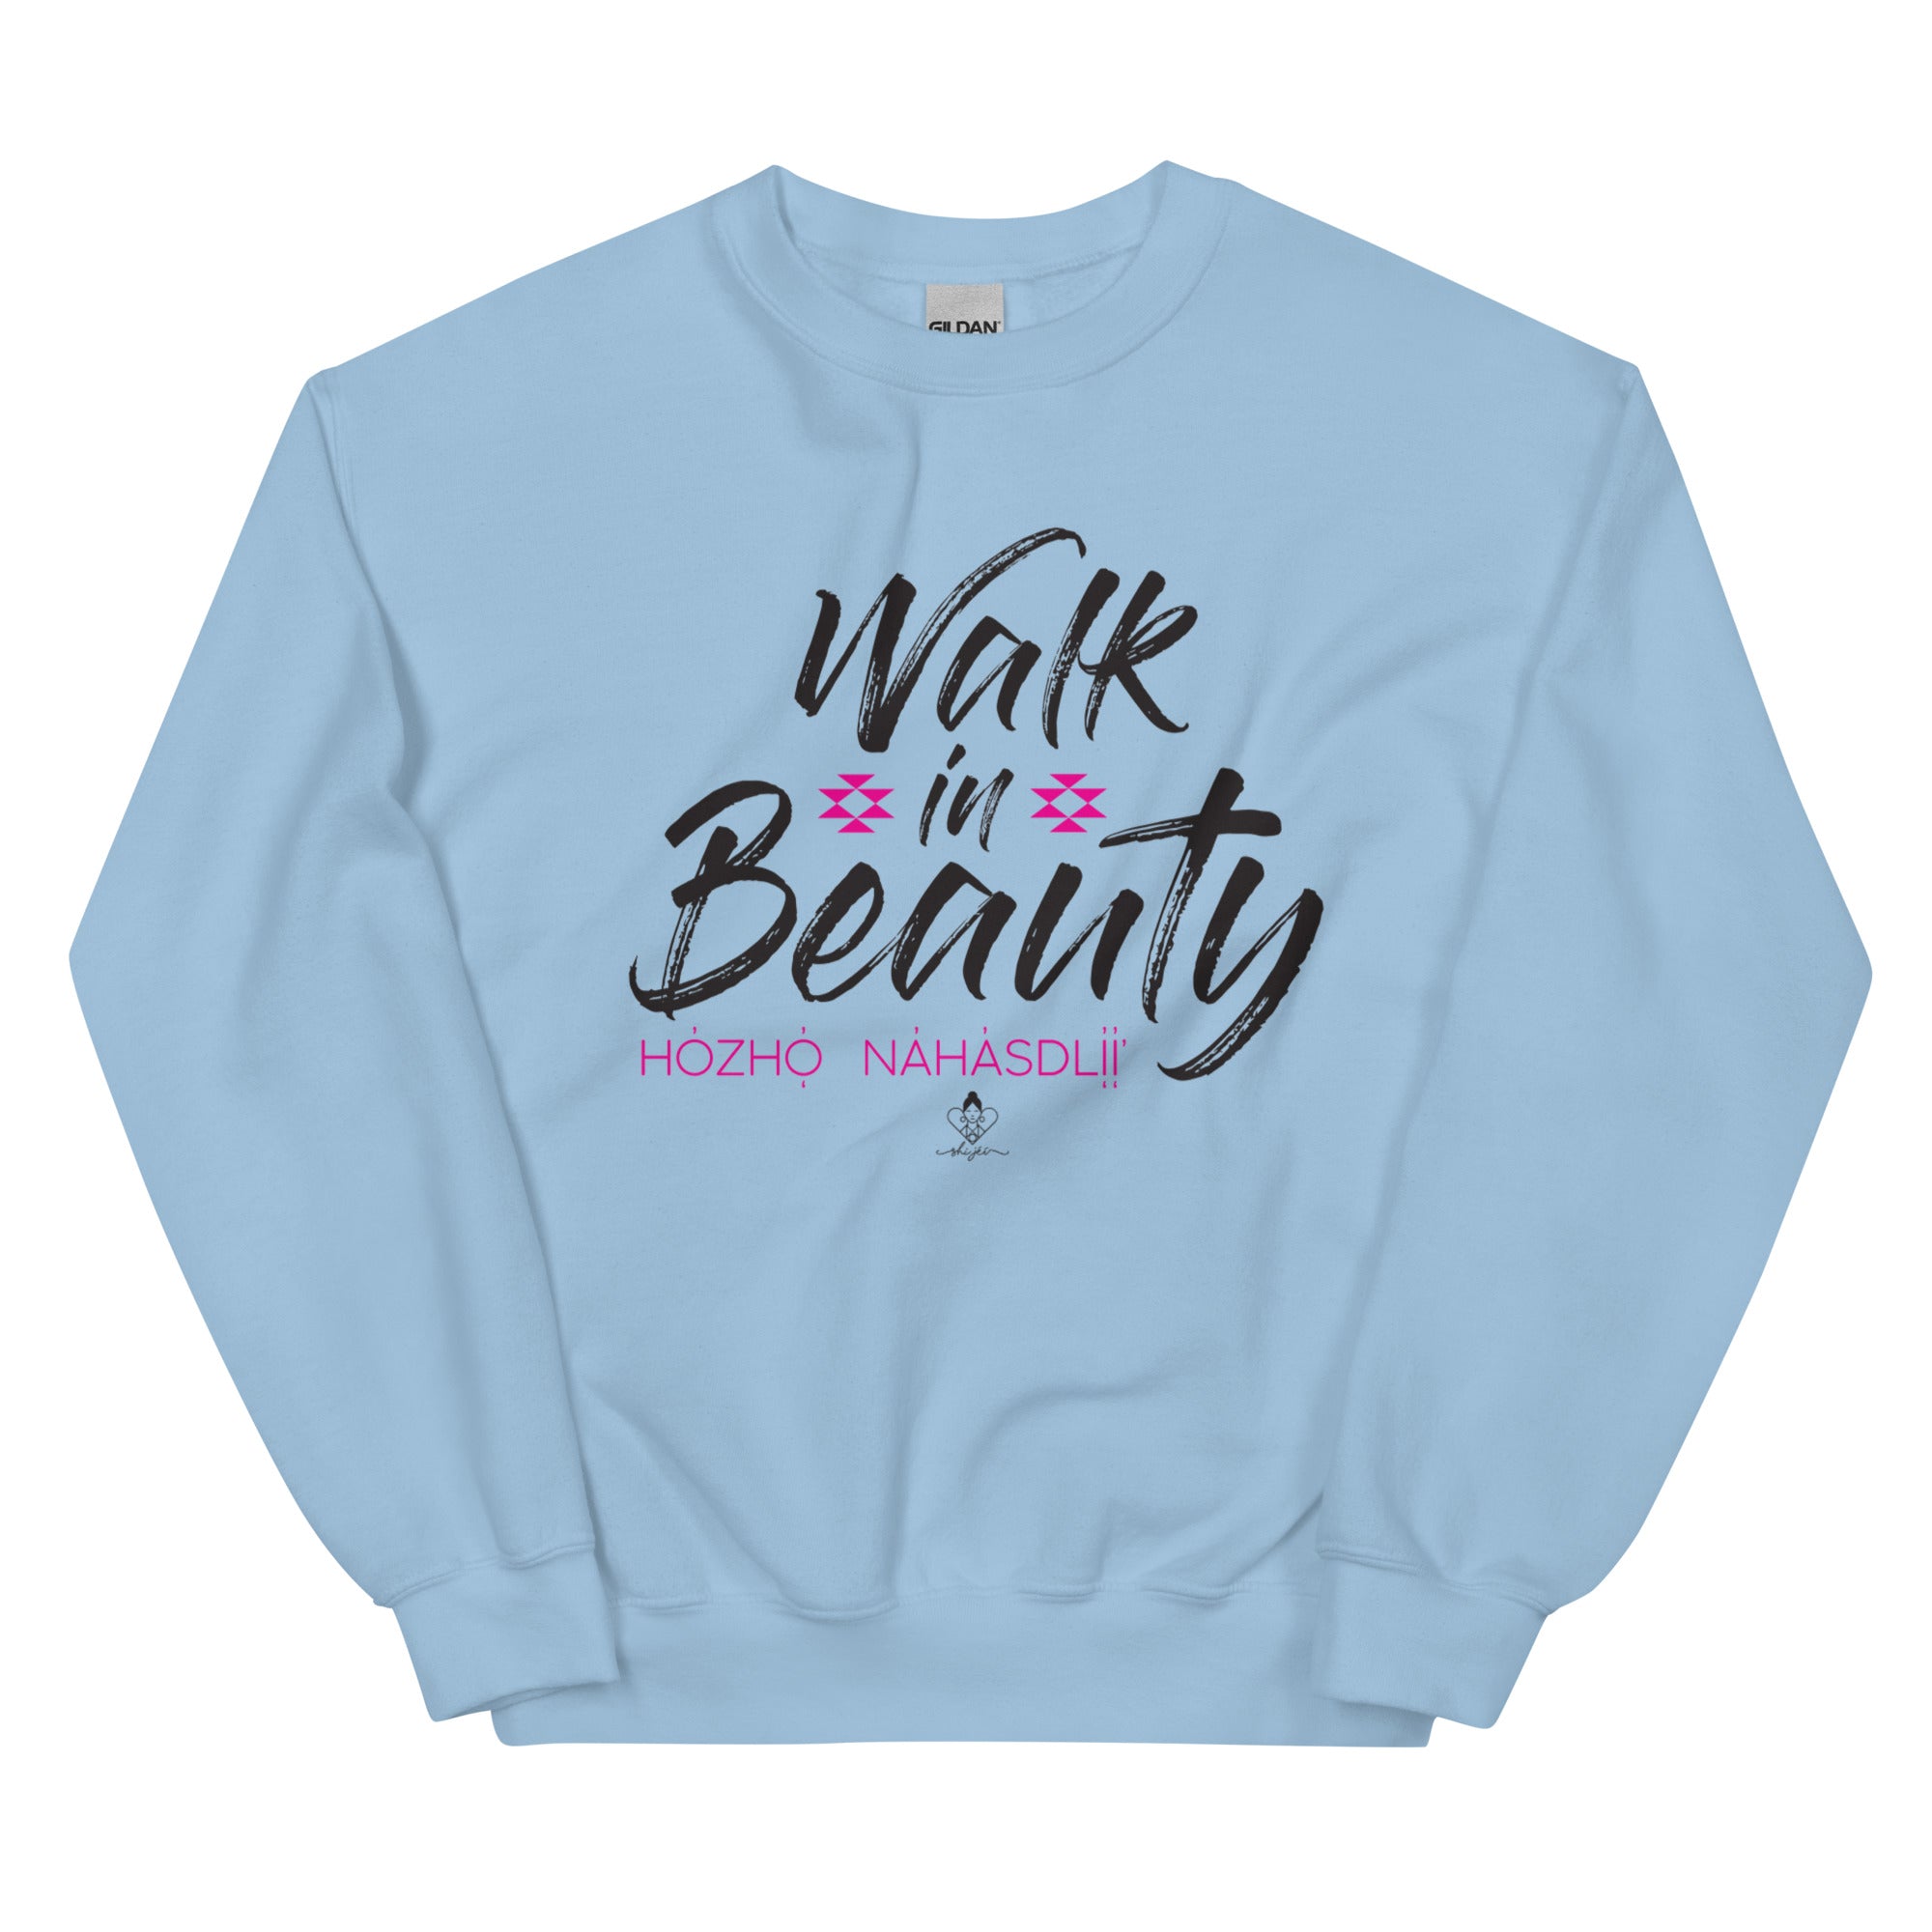 Walk in Beauty Sweatshirt